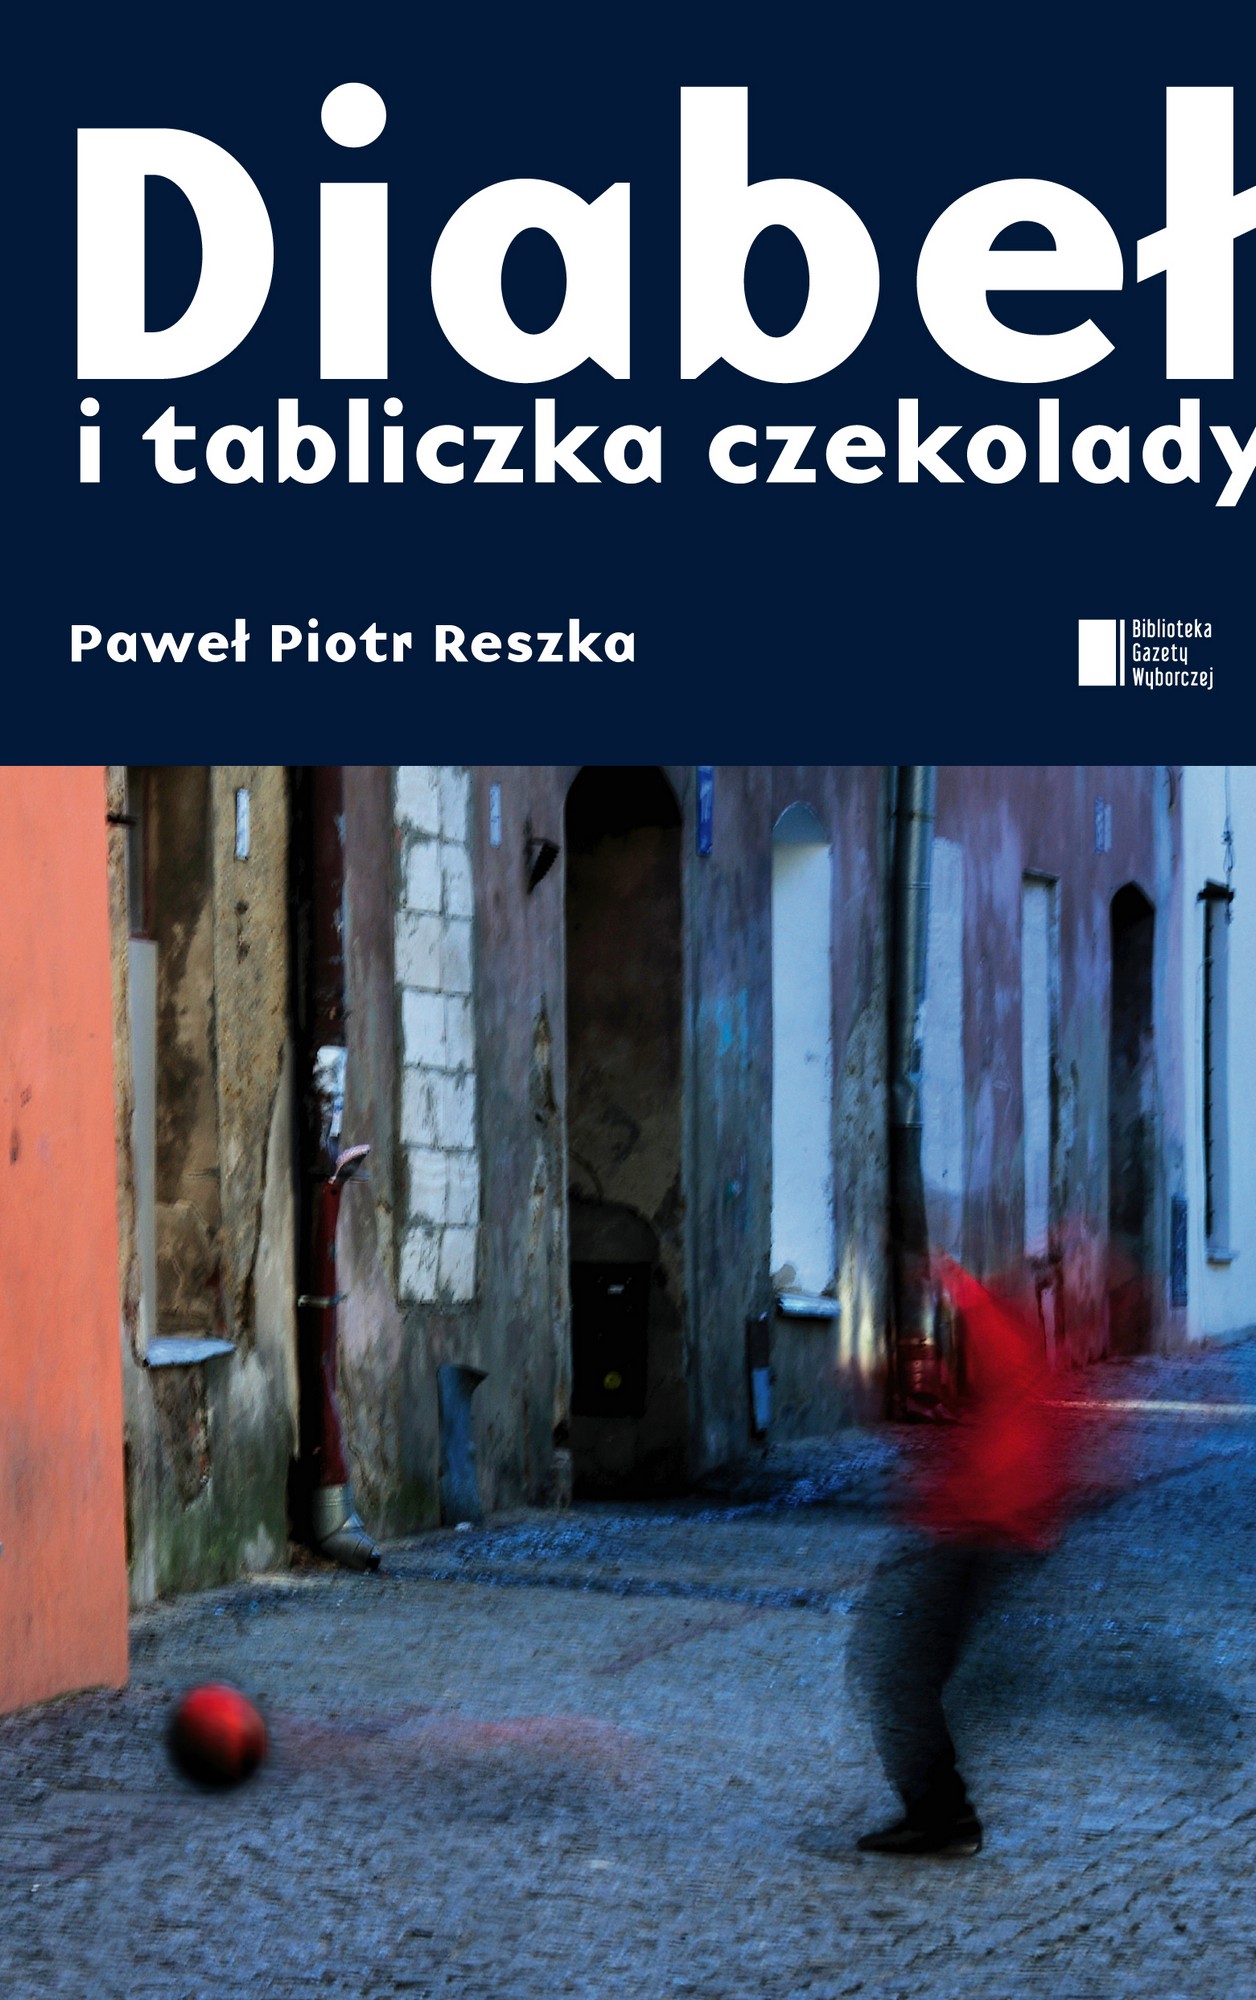 Paweł Piotr Reszka, „Diabeł i tabliczka czekolady” – okładka (źródło: materiały prasowe)